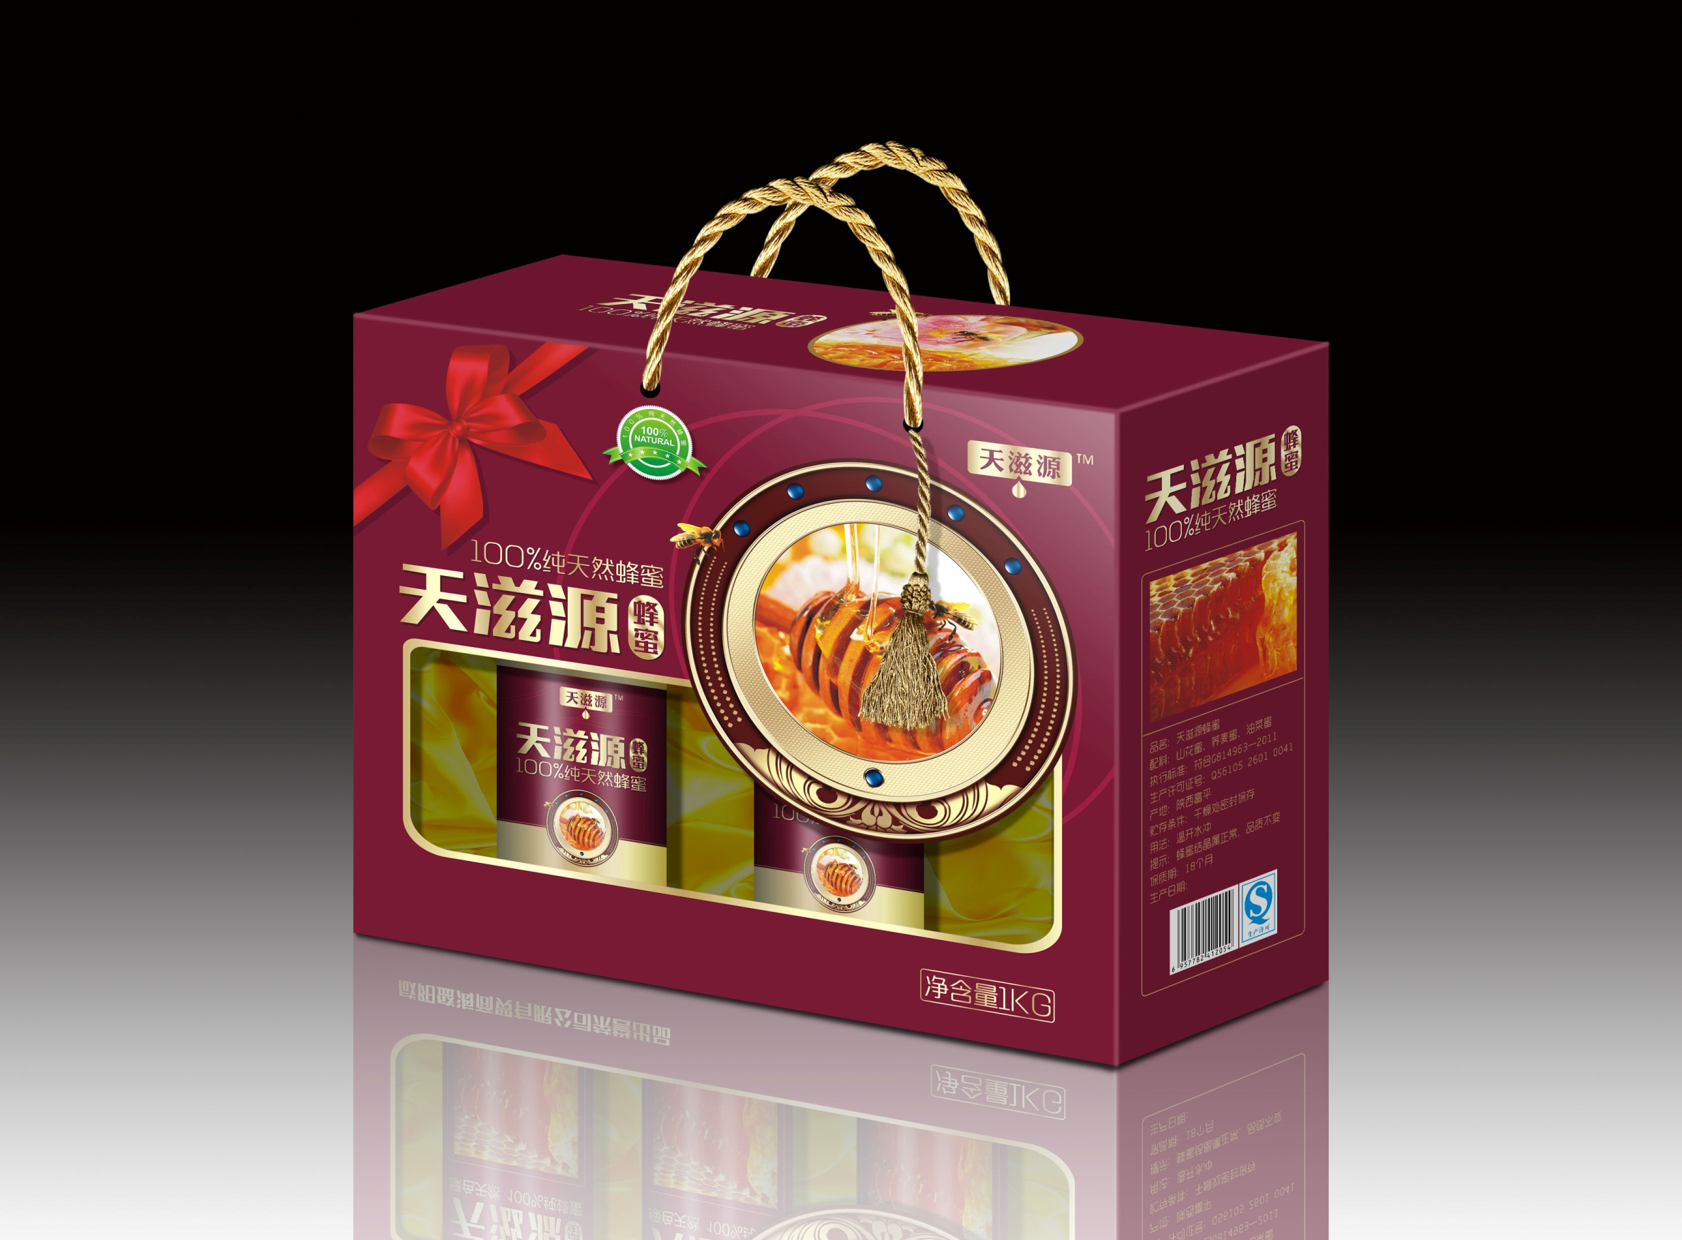 包装设计包装盒手提袋包装袋水果食品农产品茶叶礼盒插画瓶贴手绘